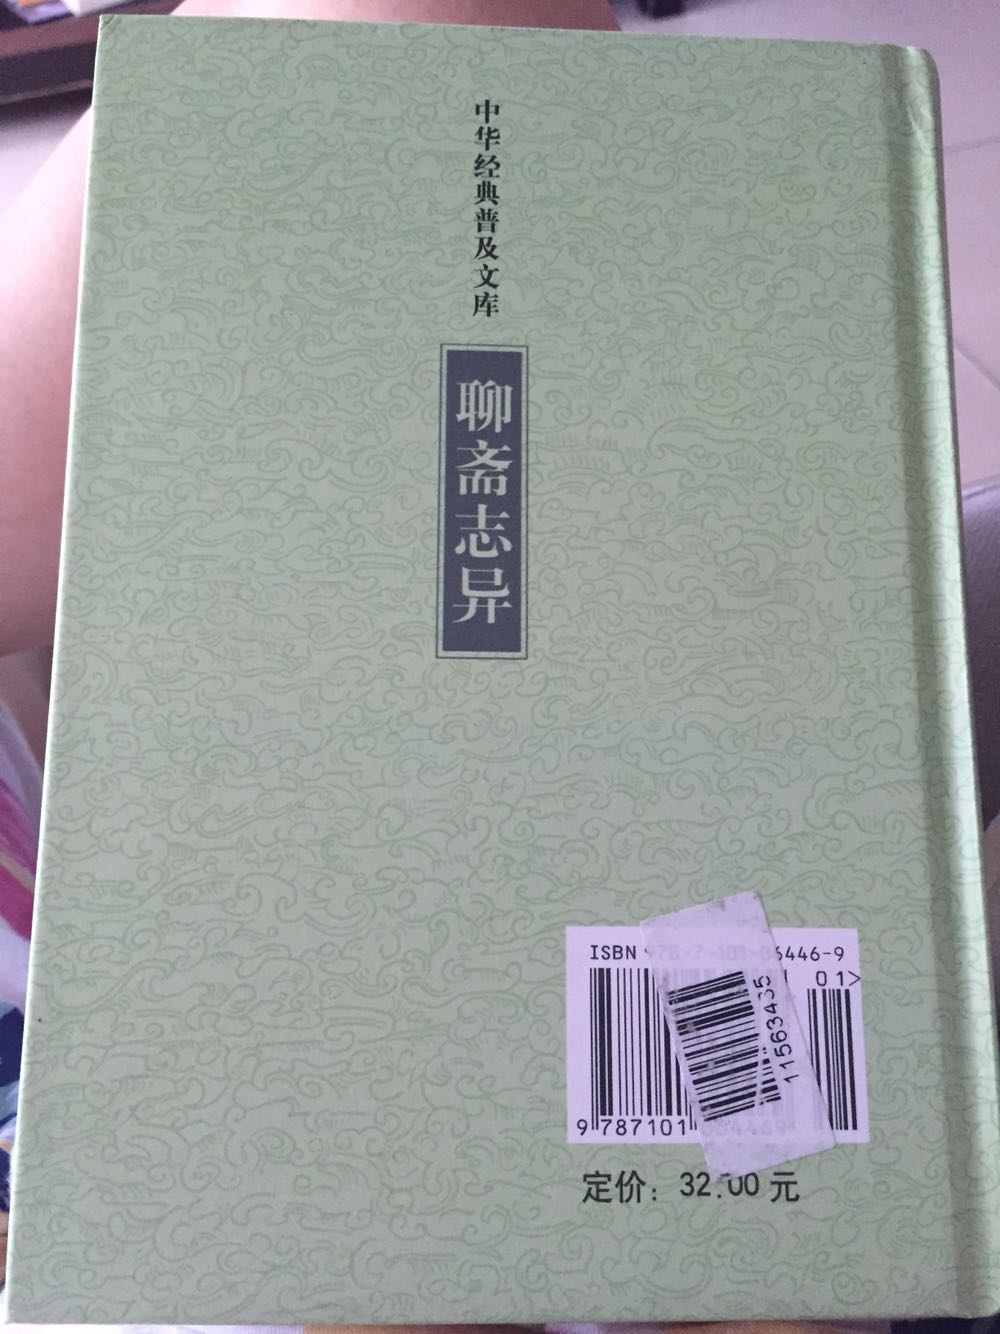 聊斋志异：中华经典普及文库，书本质量很好喔，拿在手上沉甸甸滴